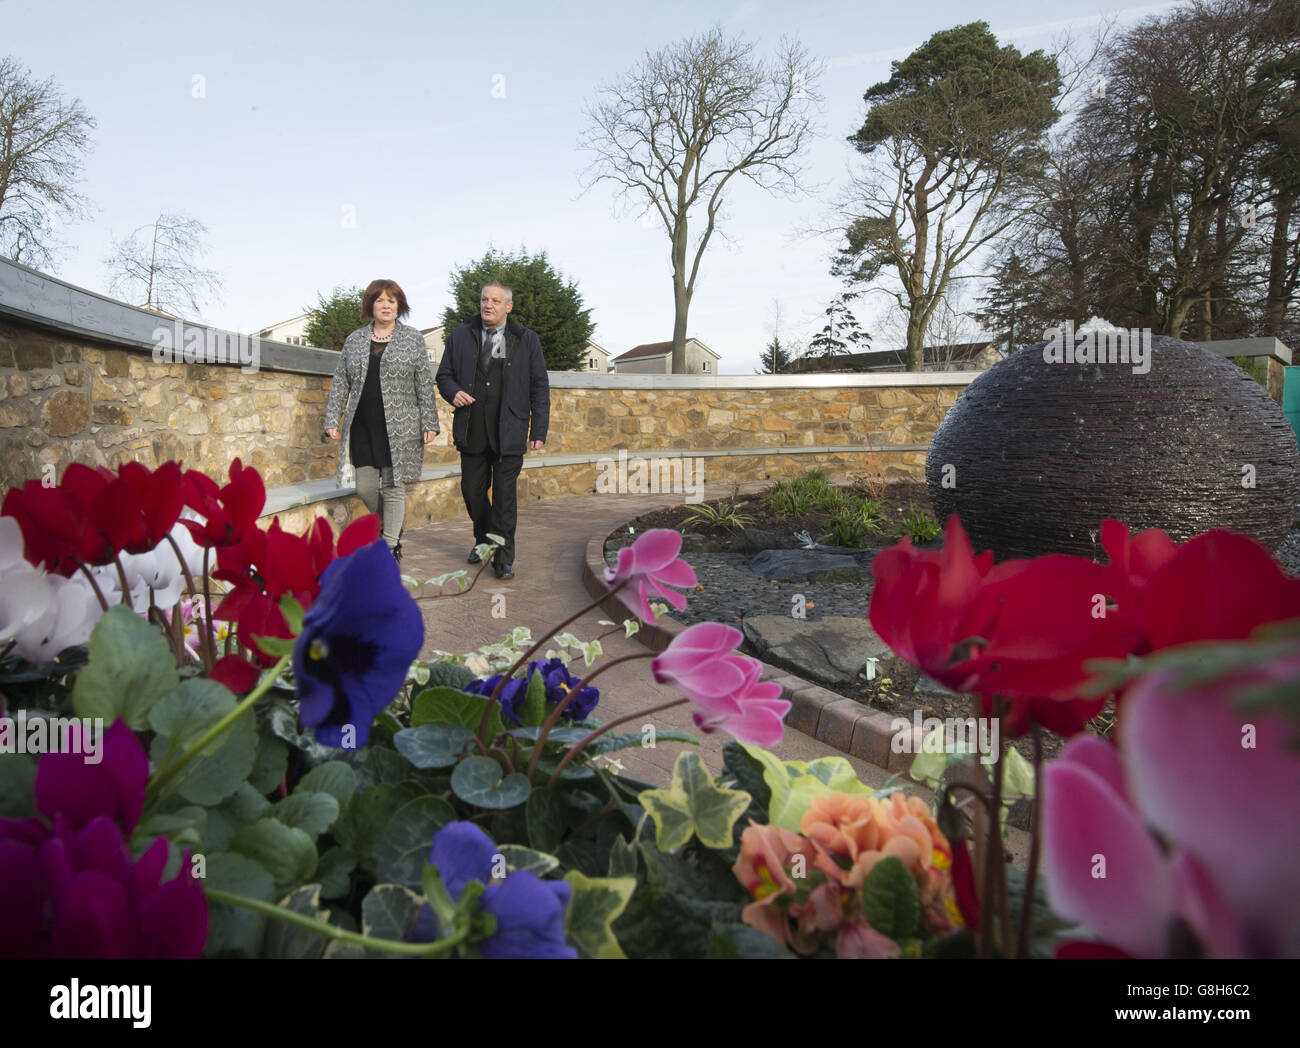 Dorothy Maitland und Willie Reid besuchen einen neu eröffneten Gedenkgarten im Mortonhall Crematorium in Edinburgh, auf dem 149 Tafeln mit den Namen von stillgeborenen und toten Neugeborenen stehen, die am Mortonhall-Babyascheskandal beteiligt sind. Stockfoto